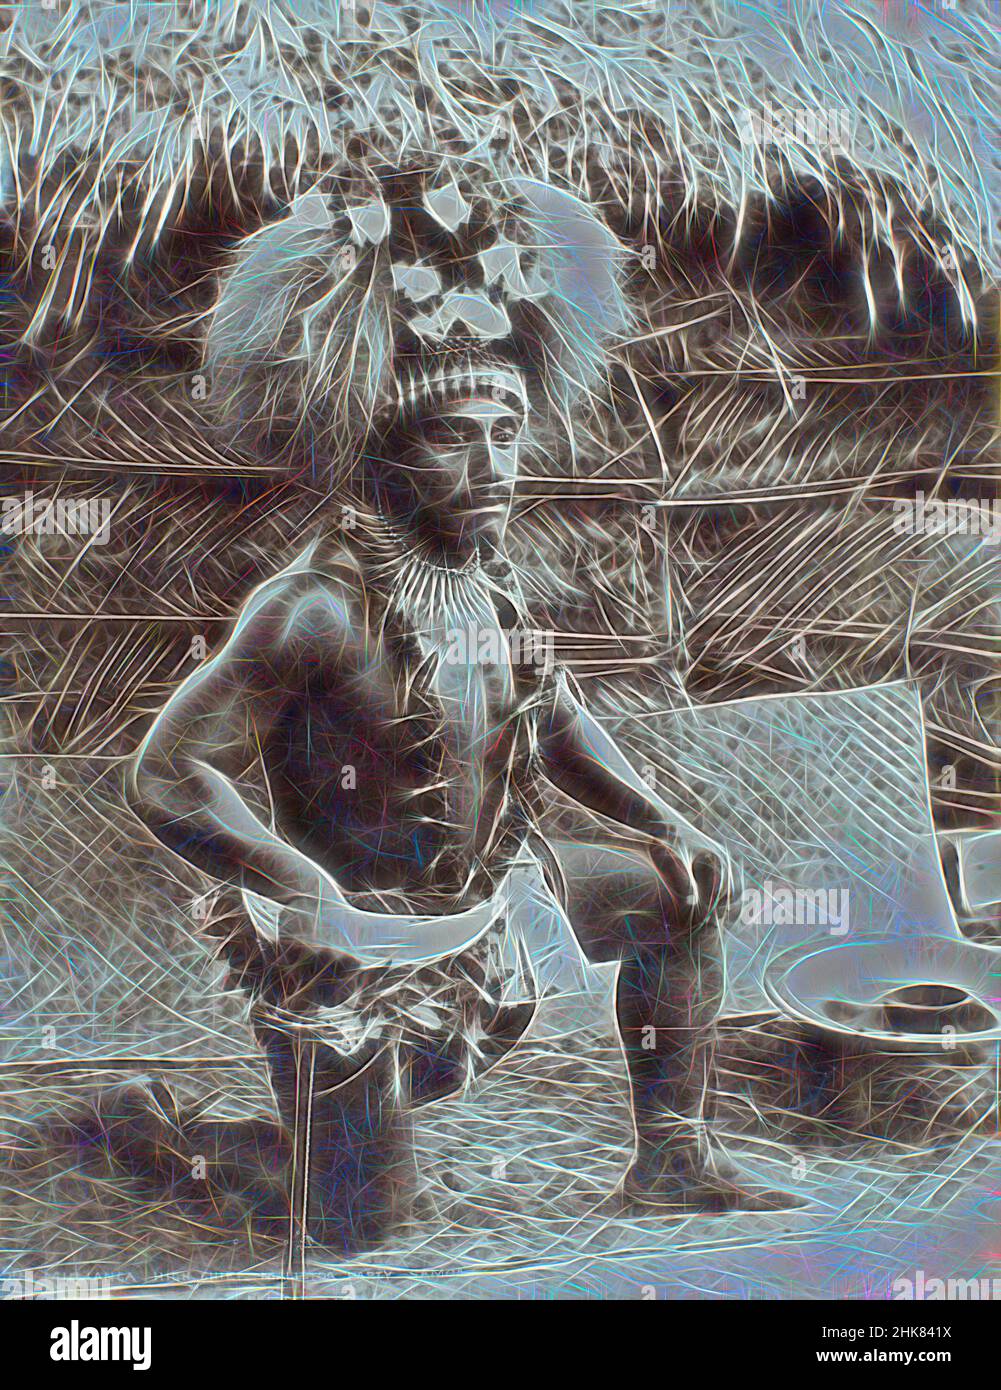 Inspiriert von Mulianga, High Chief, Malietoa Party, Samoa, Burton Brothers Studio, Fotostudio, 1890s, Samoa, Schwarz-Weiß-Fotografie, neu erfunden von Artotop. Klassische Kunst neu erfunden mit einem modernen Twist. Design von warmen fröhlichen Leuchten der Helligkeit und Lichtstrahl Strahlkraft. Fotografie inspiriert von Surrealismus und Futurismus, umarmt dynamische Energie der modernen Technologie, Bewegung, Geschwindigkeit und Kultur zu revolutionieren Stockfoto